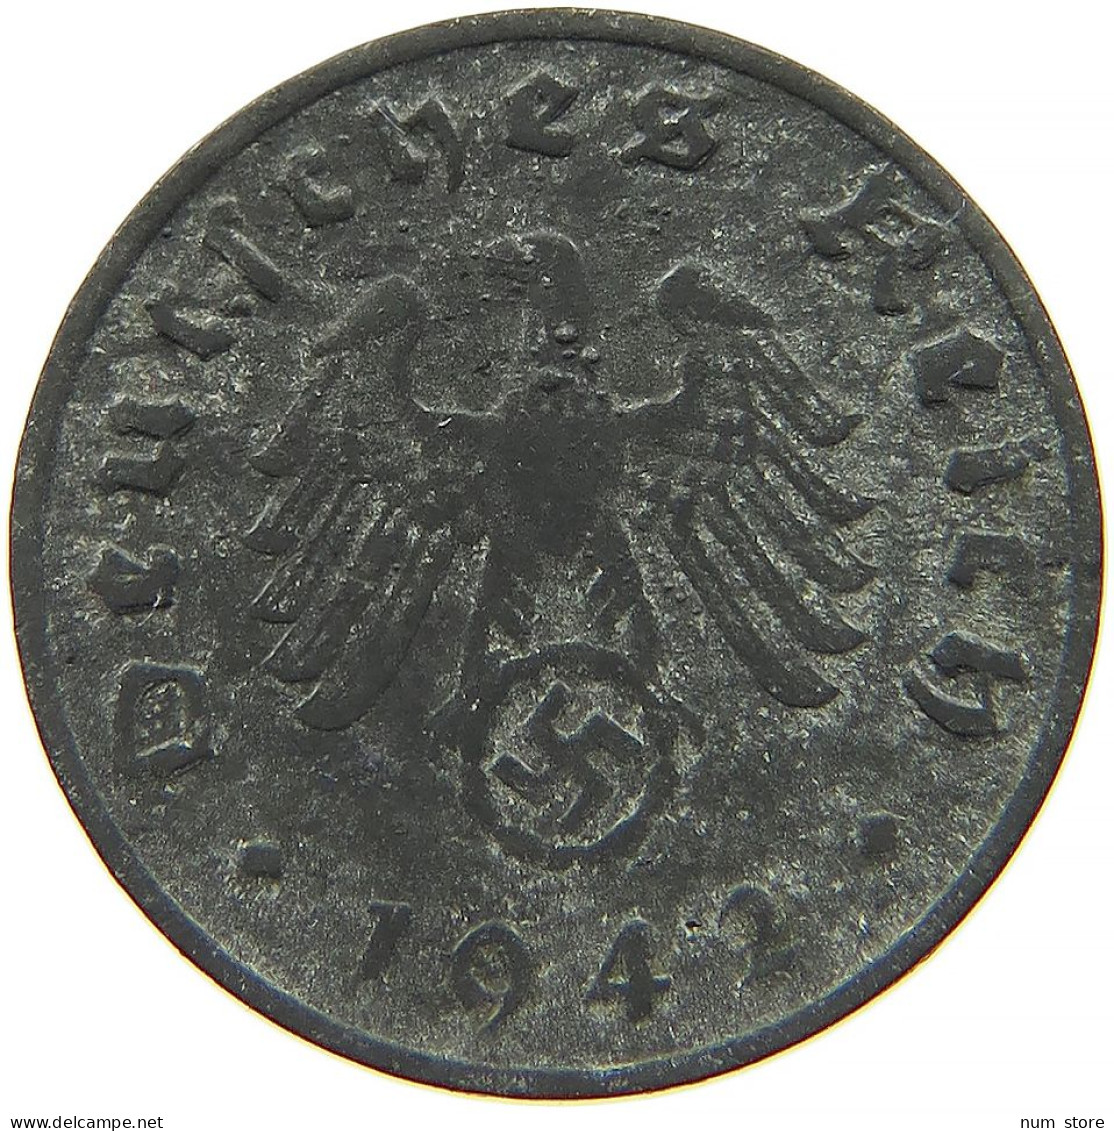 GERMANY 1 REICHSPFENNIG 1942 D #s091 1137 - 1 Reichspfennig